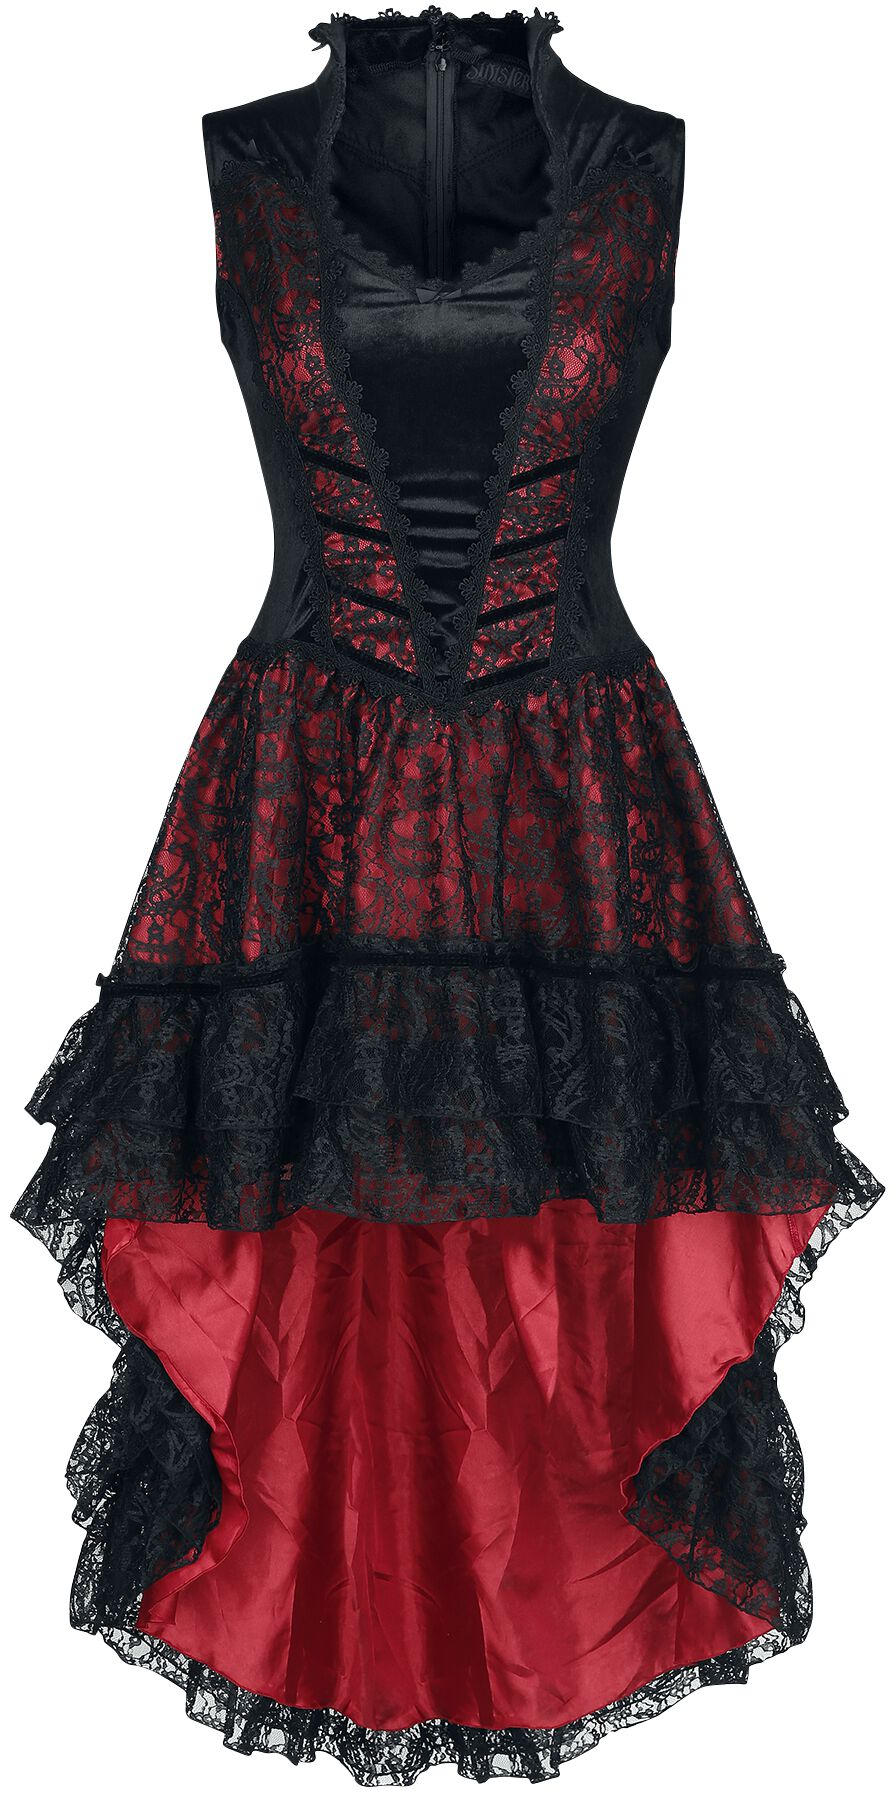 Sinister Gothic - Mittelalter Kleid knielang - Gothic Dress - XS bis 4XL - für Damen - Größe S - schwarz/rot